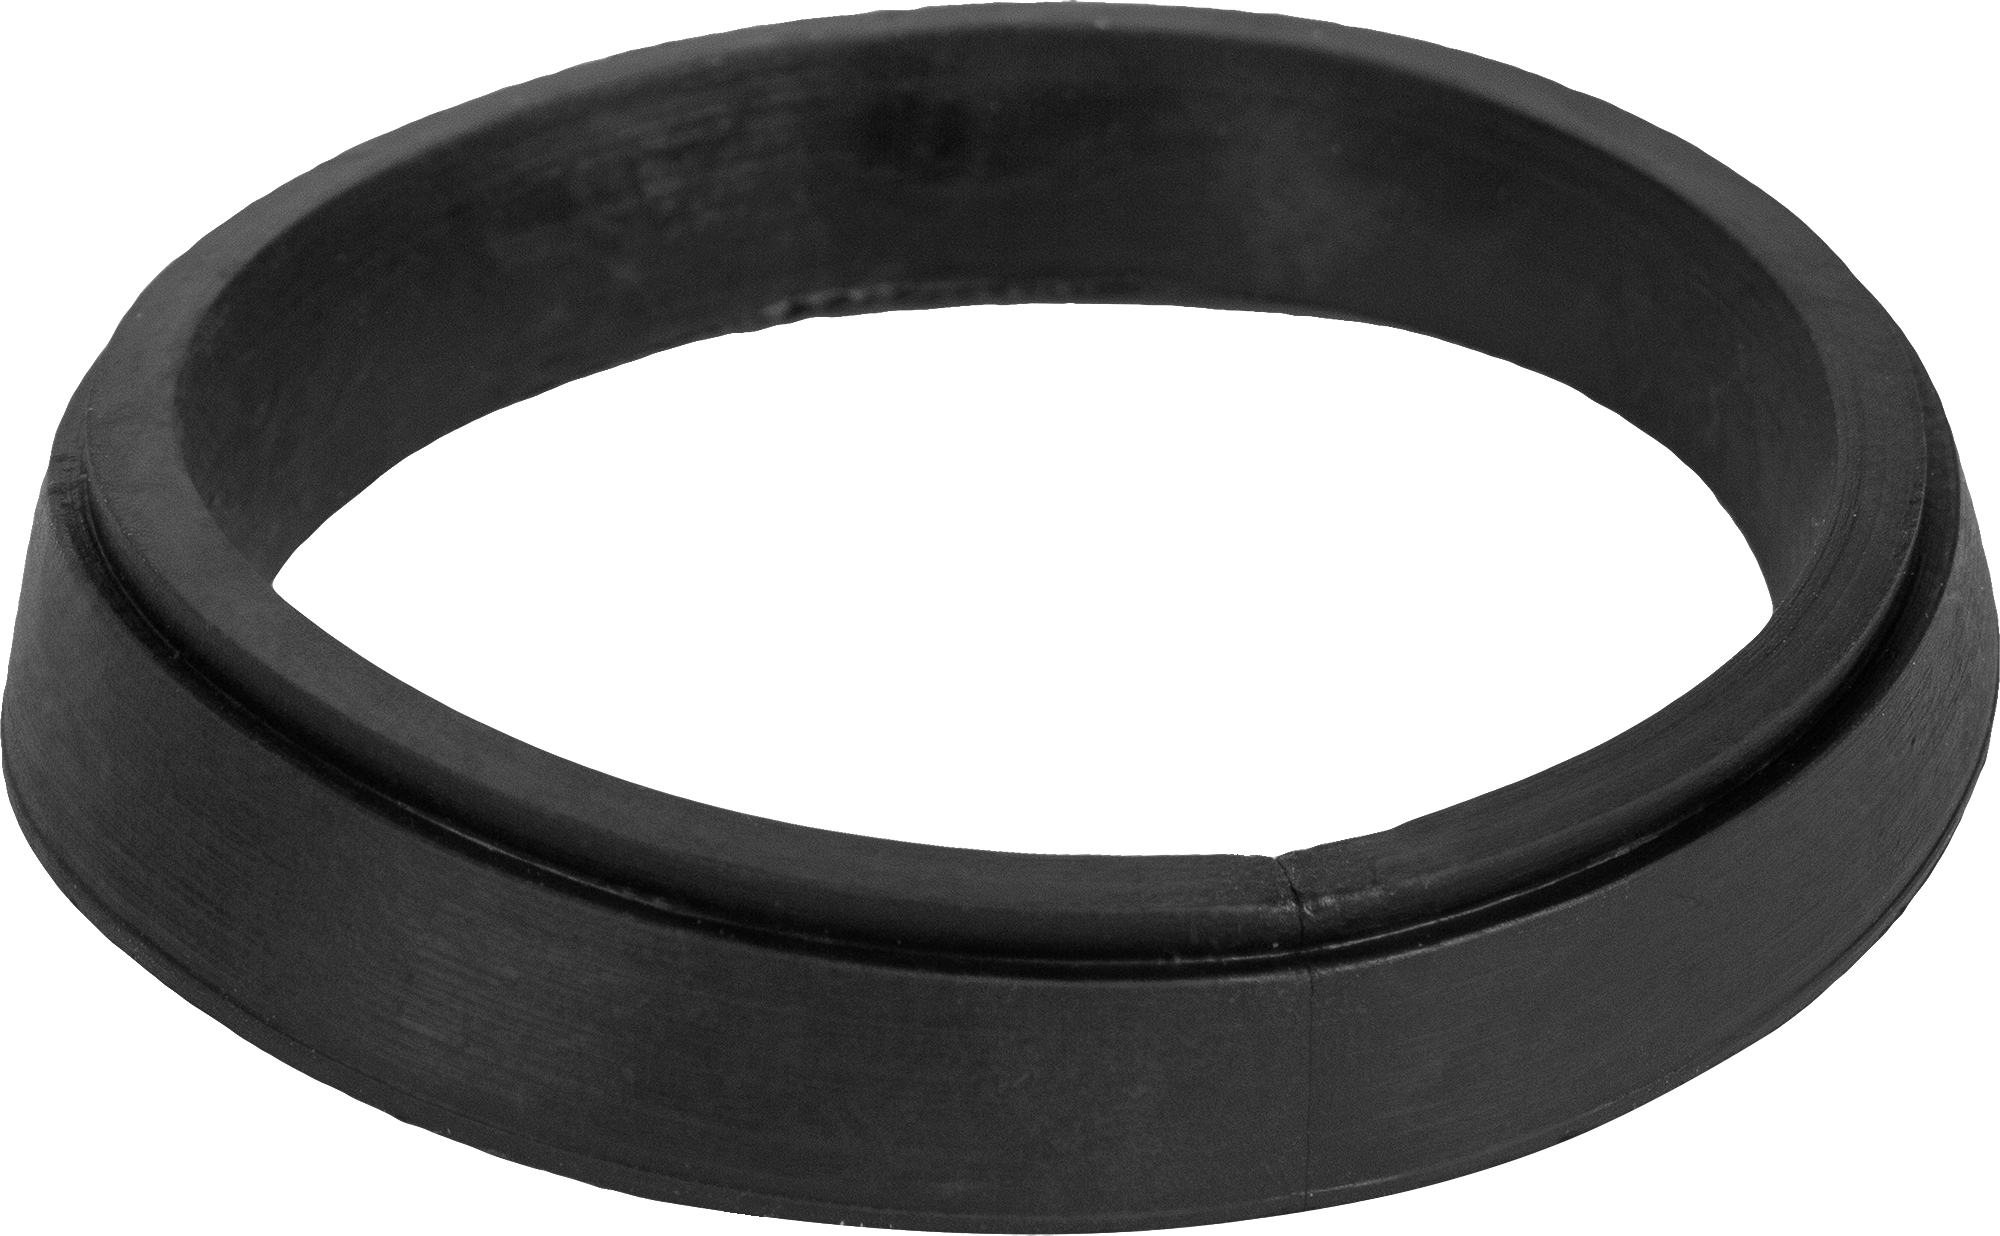 Уплотнительное кольцо Симтек для сифона 55x65х10 мм